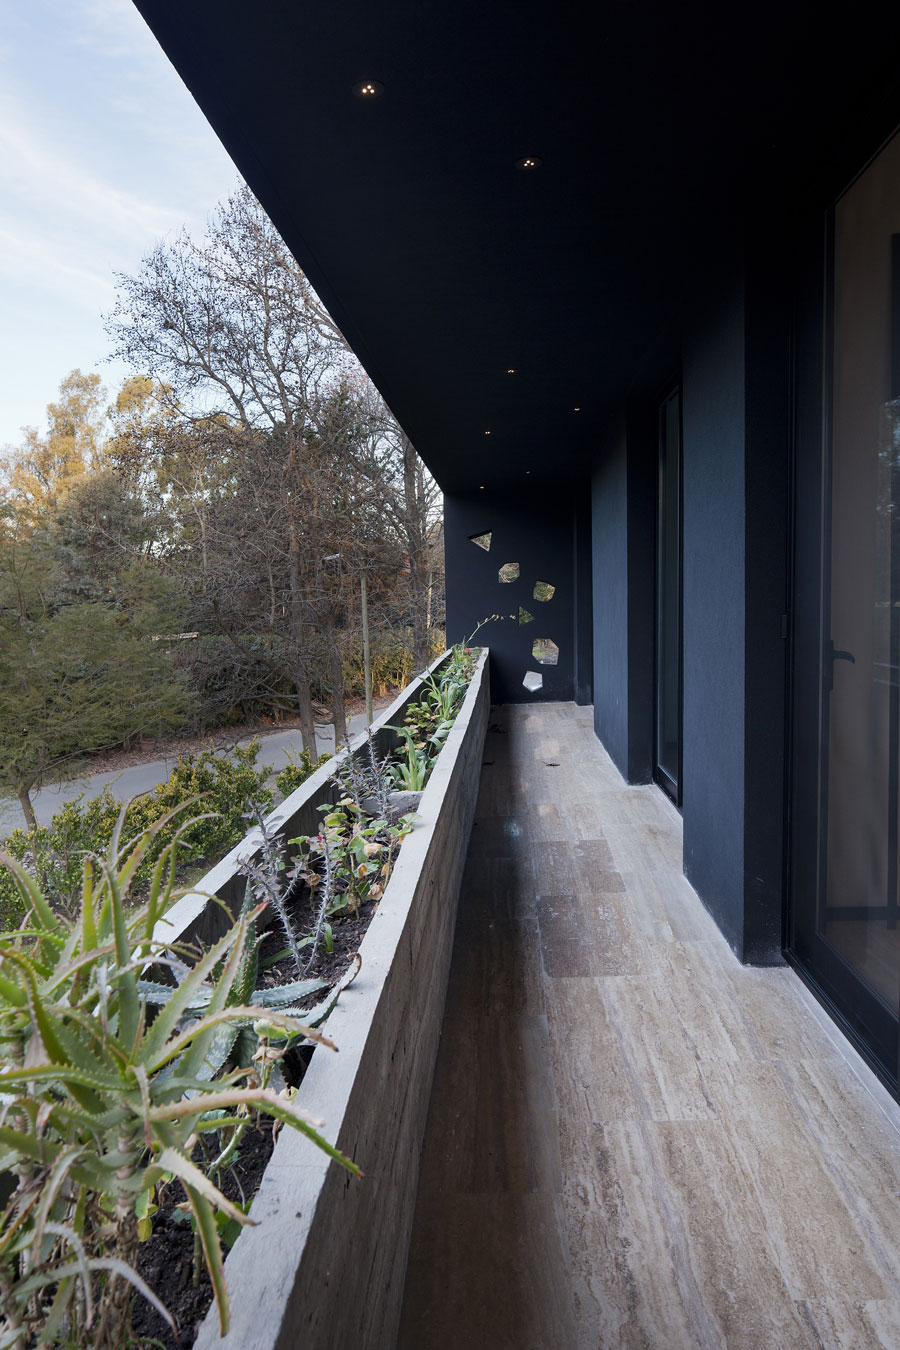 Геометрические фантазии дизайна загородного дома blltt house от архитектора enrique barberis, буэнос-айрес